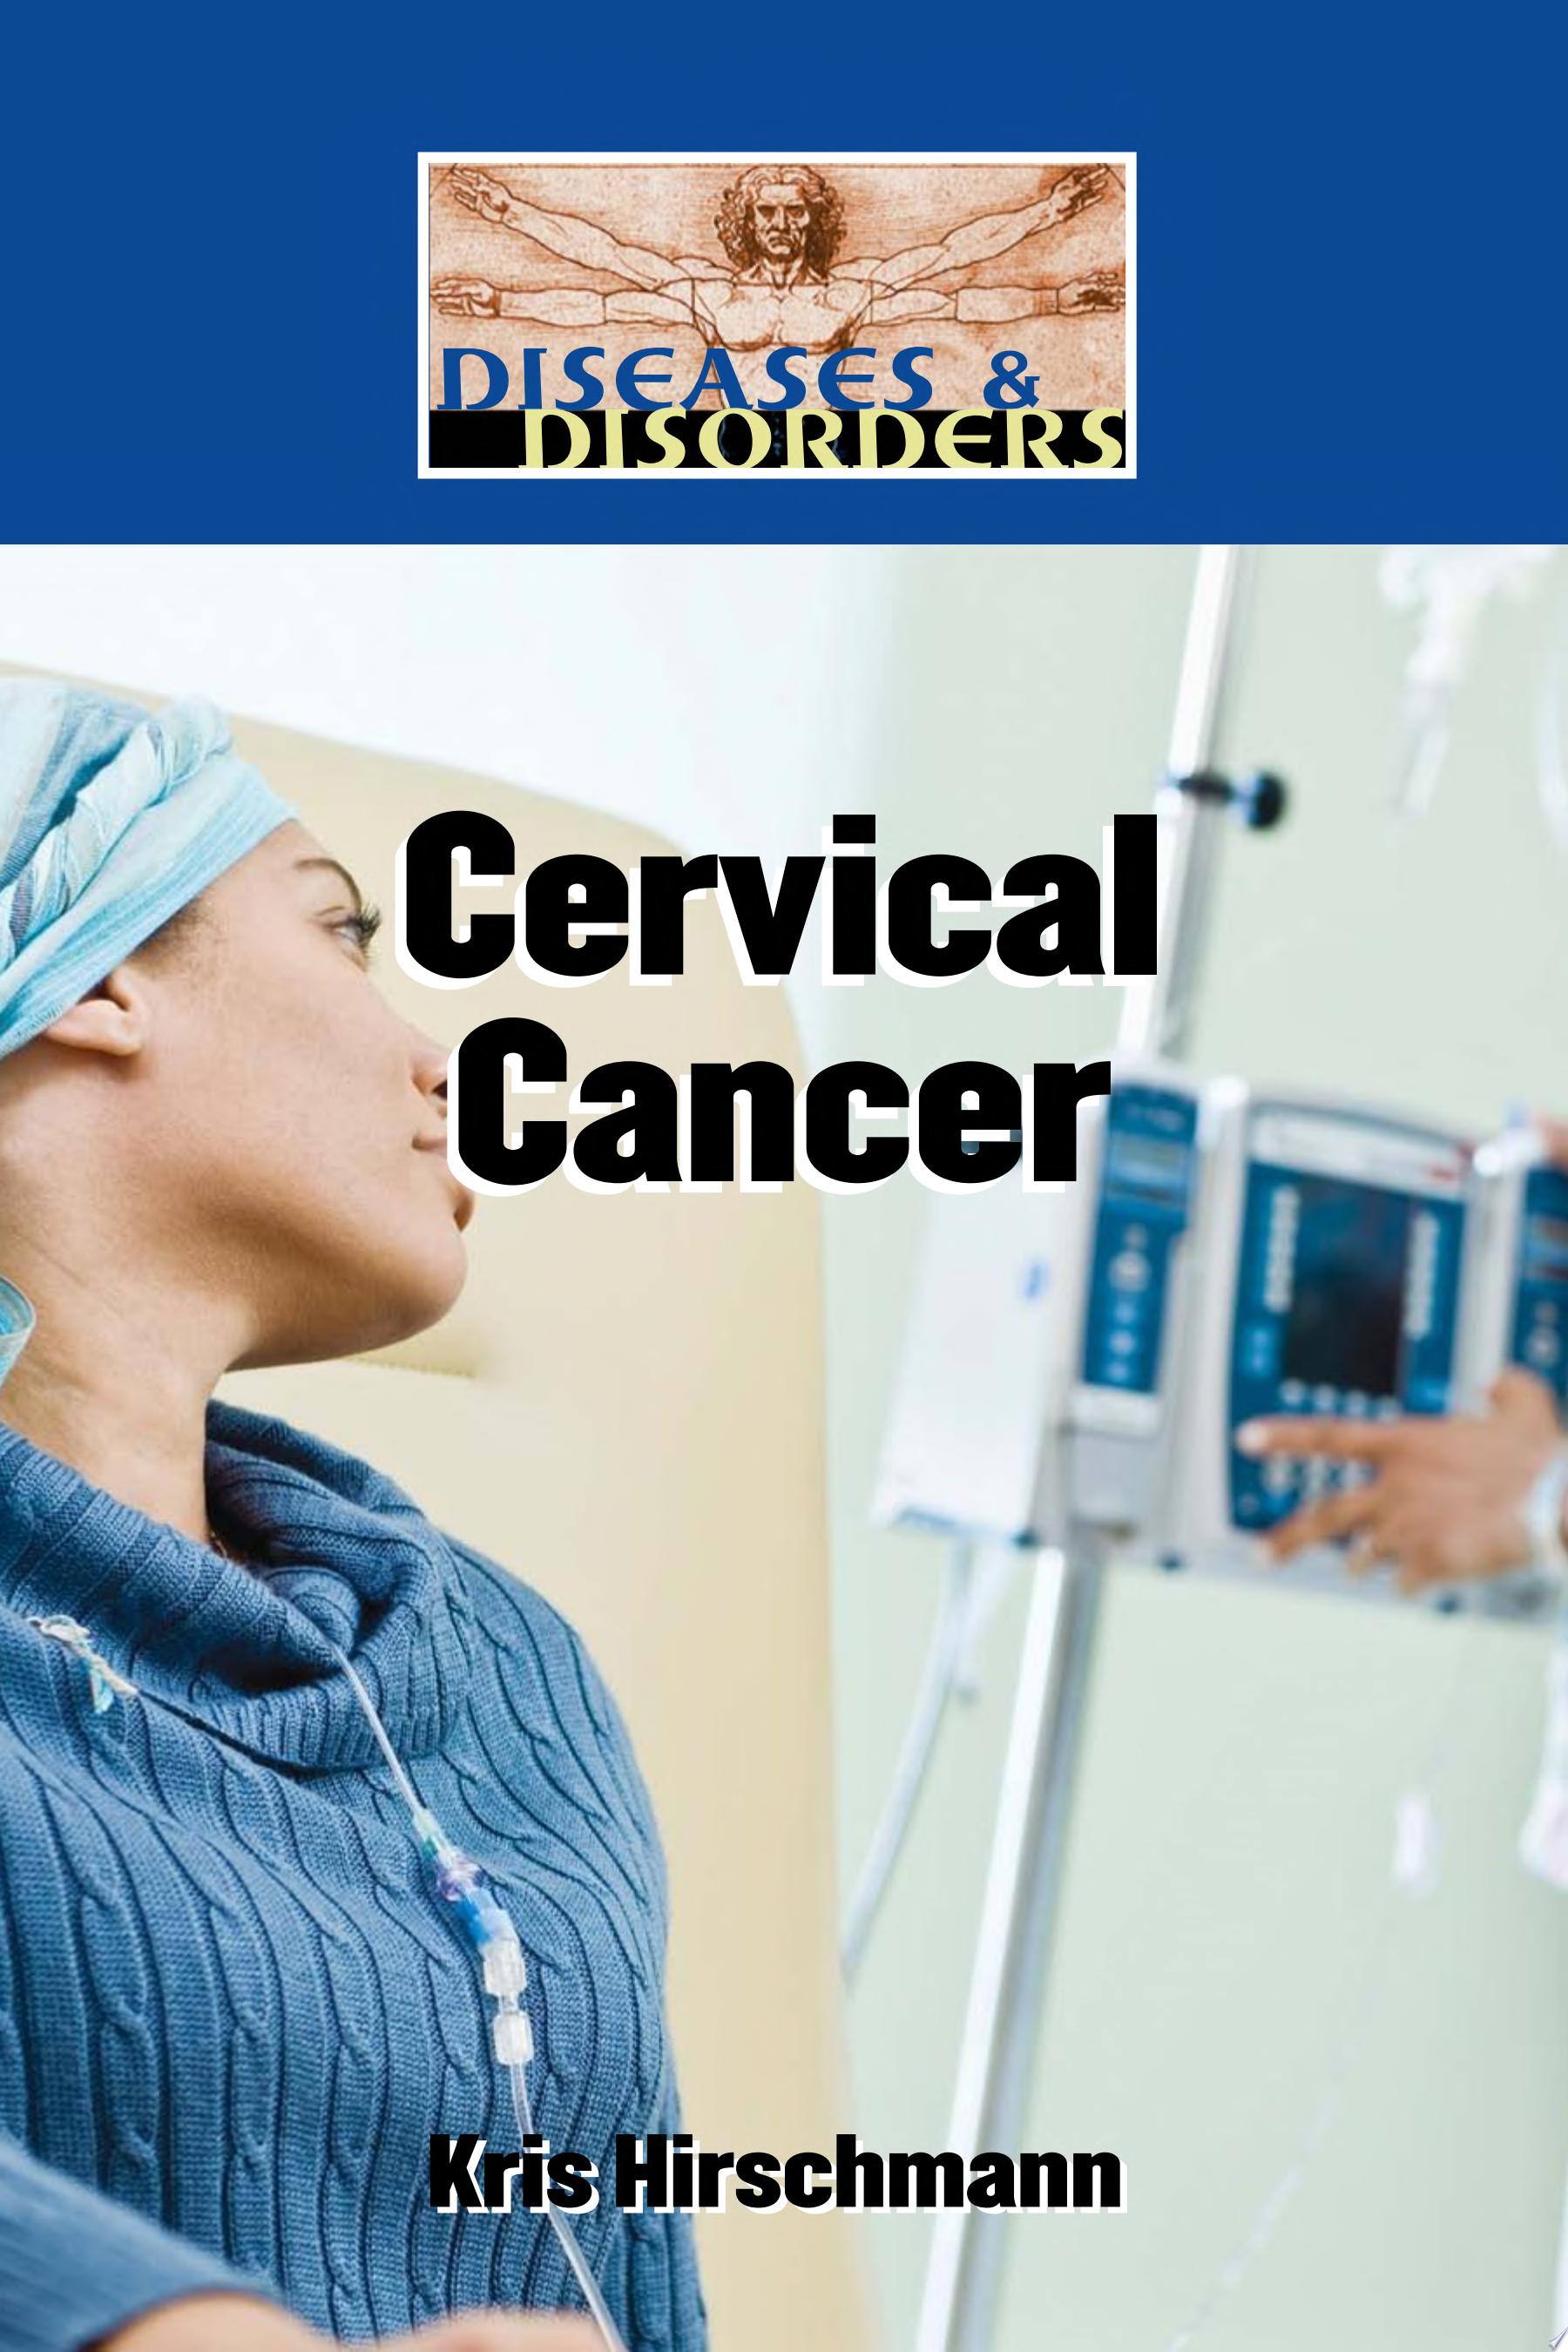 Image for "Cervical Cancer"